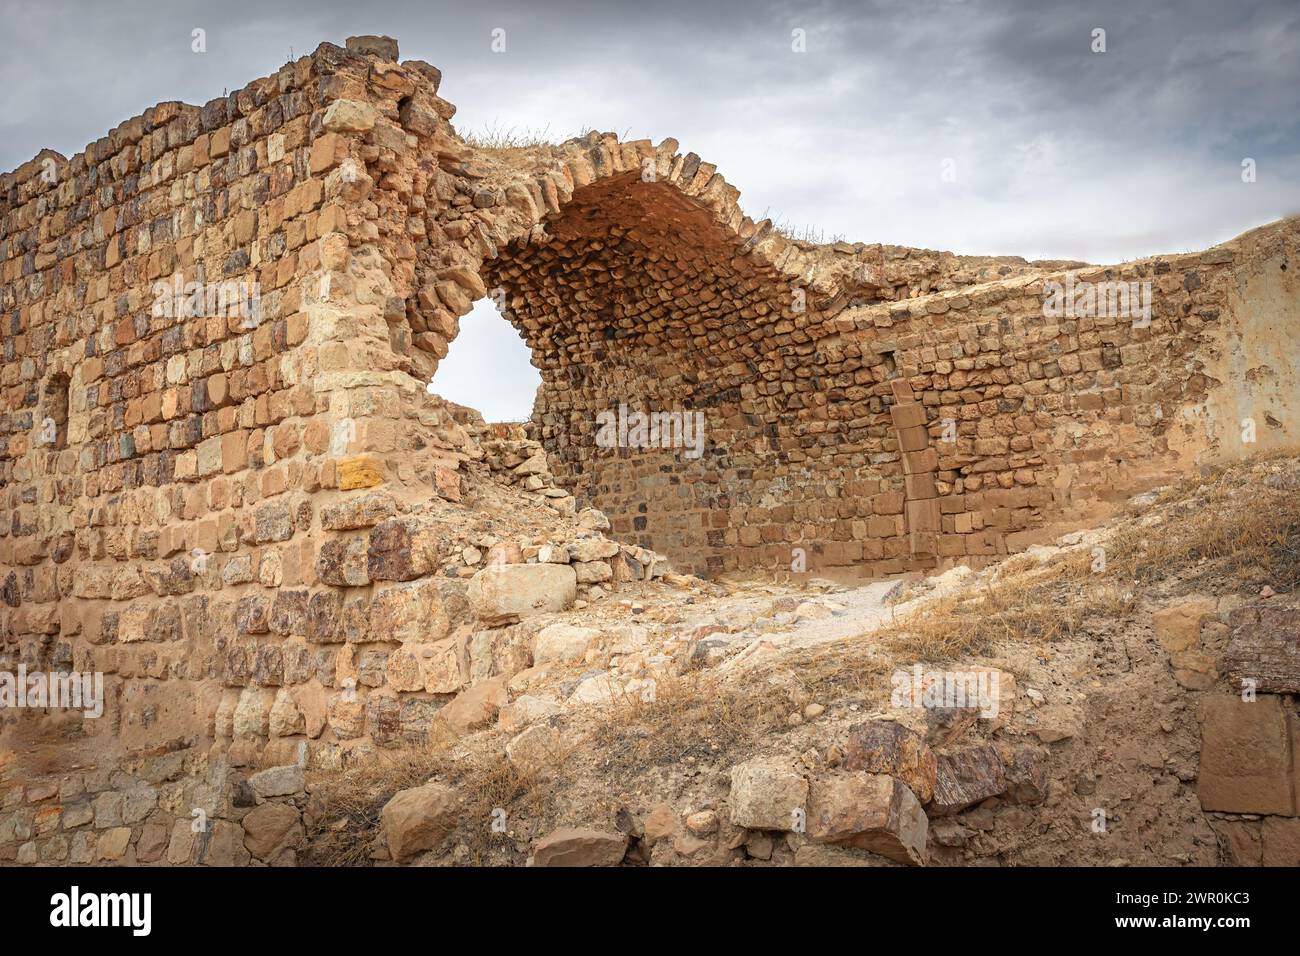 Ruines préservées du Kerak médiéval Castle.in Jordanie. Horizontalement. Banque D'Images